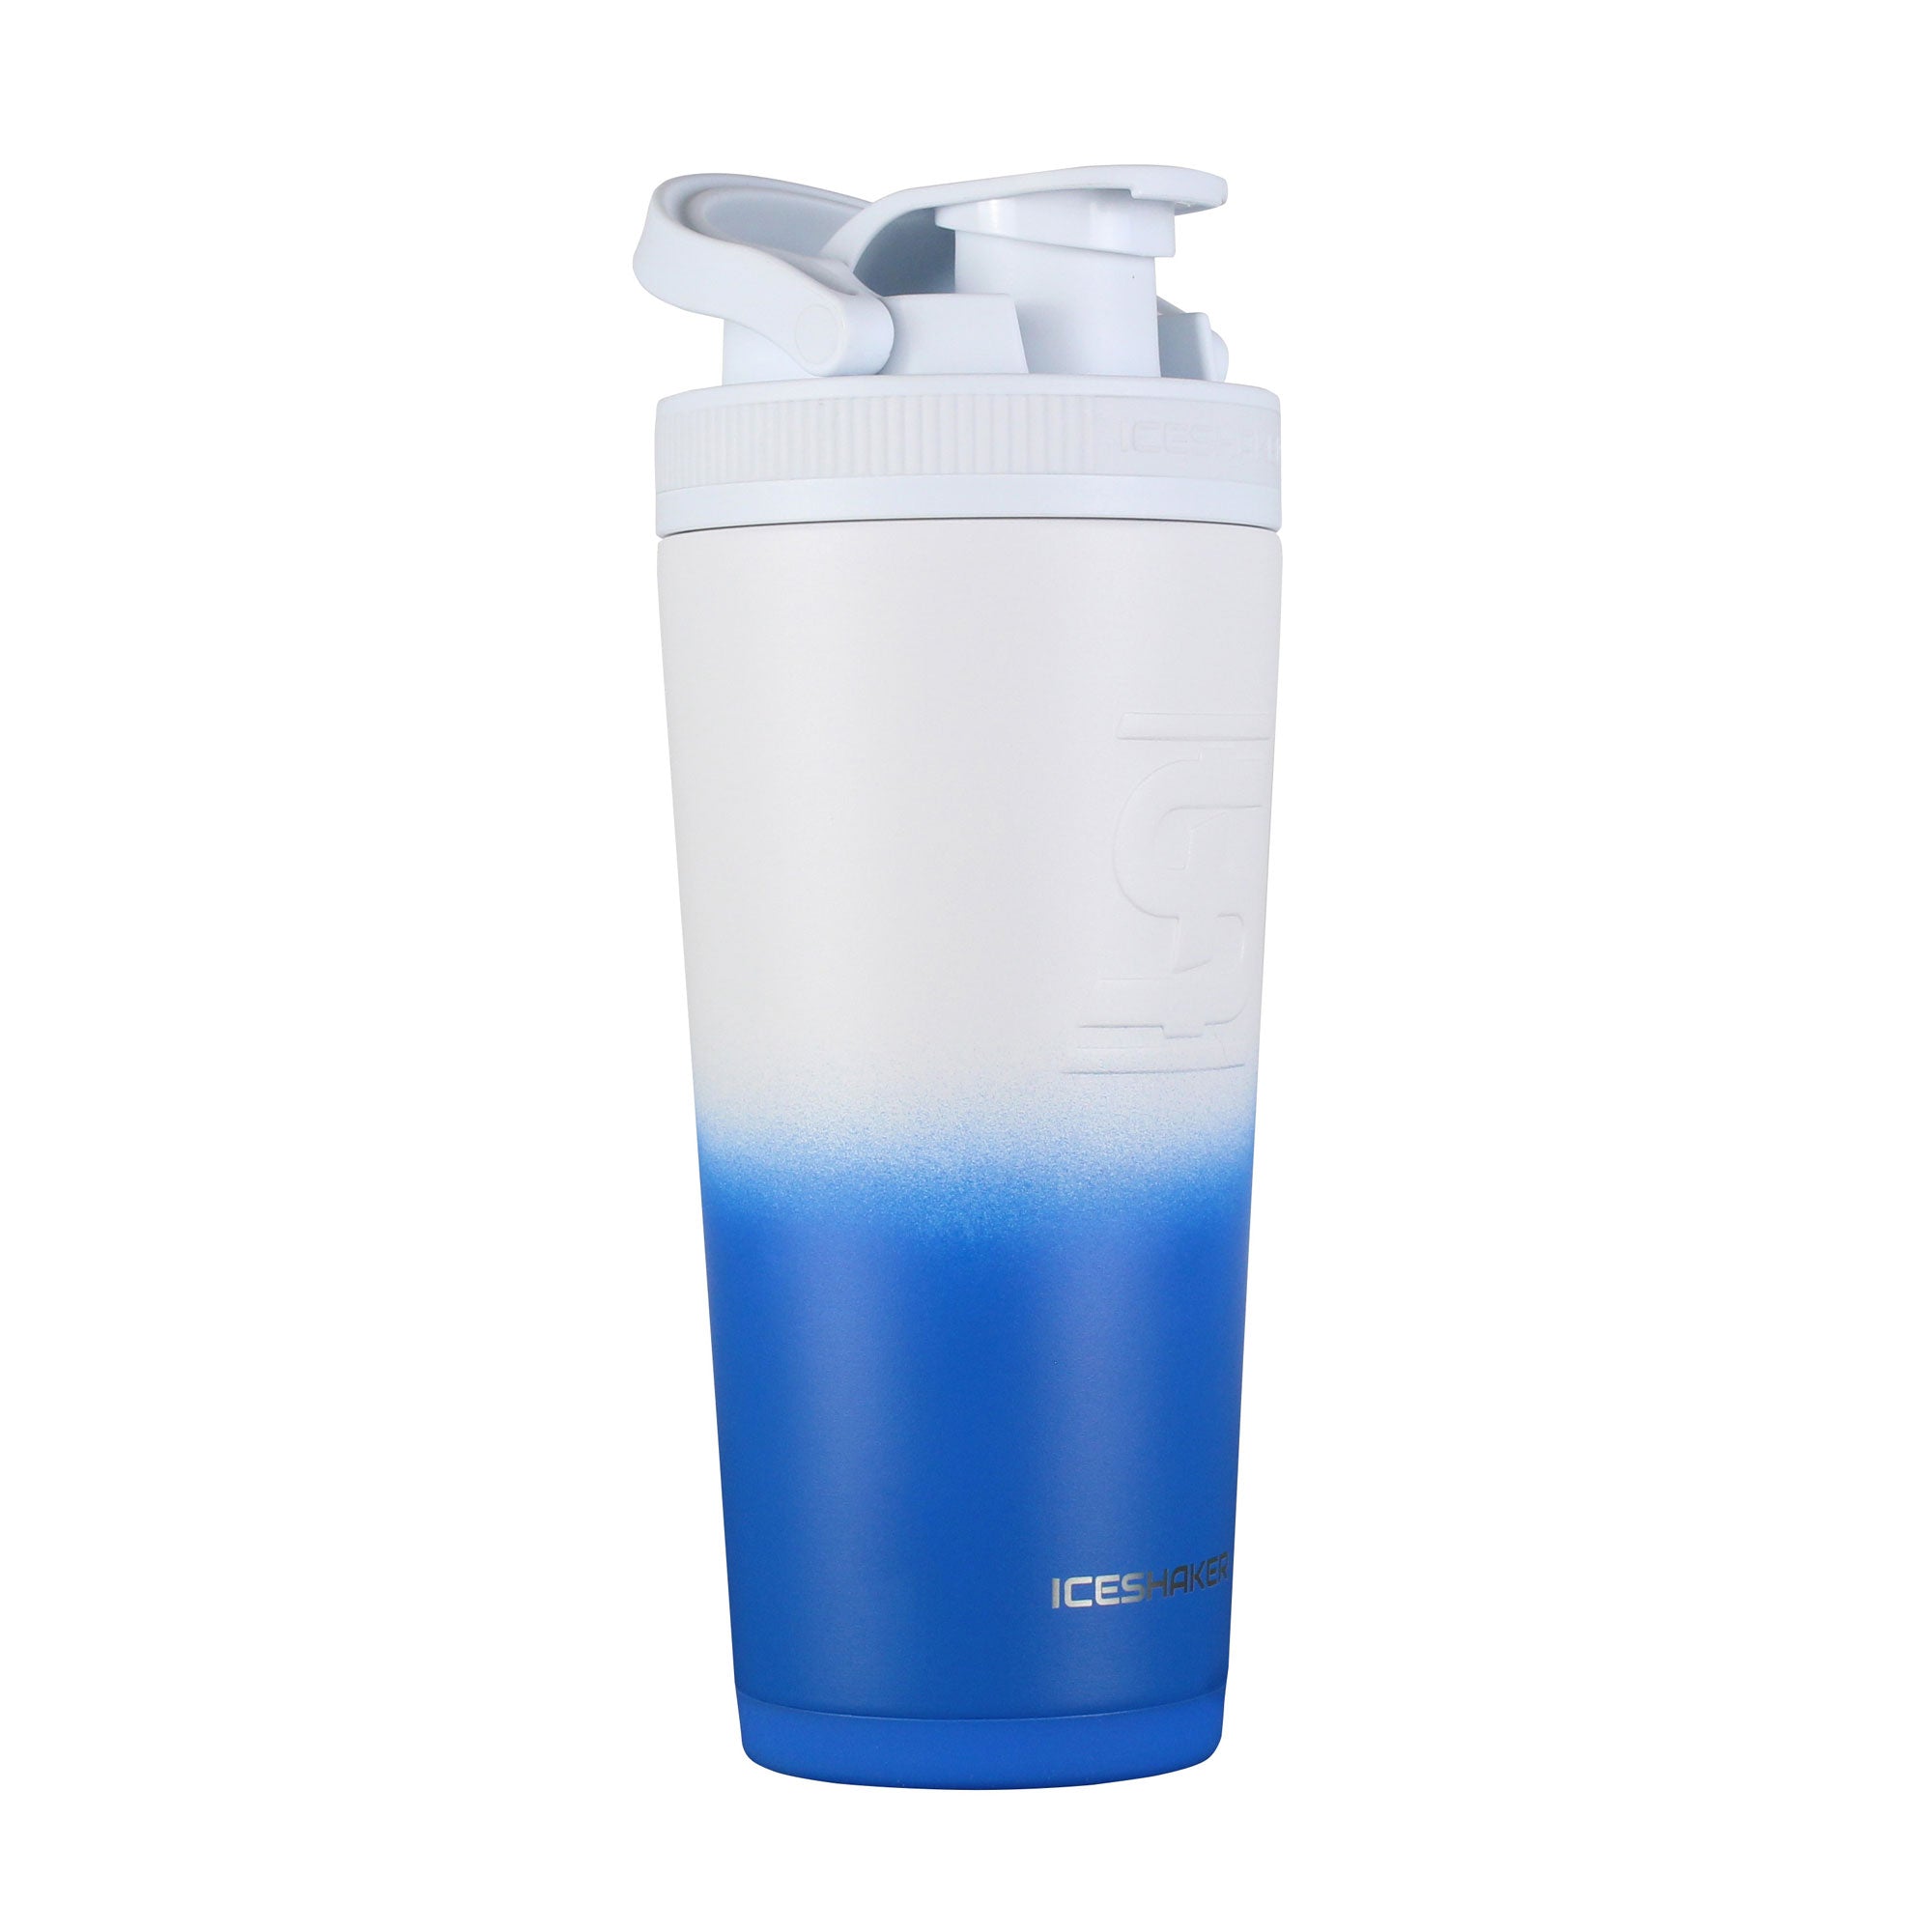 Ice Shaker 36 oz White Shaker Bottle